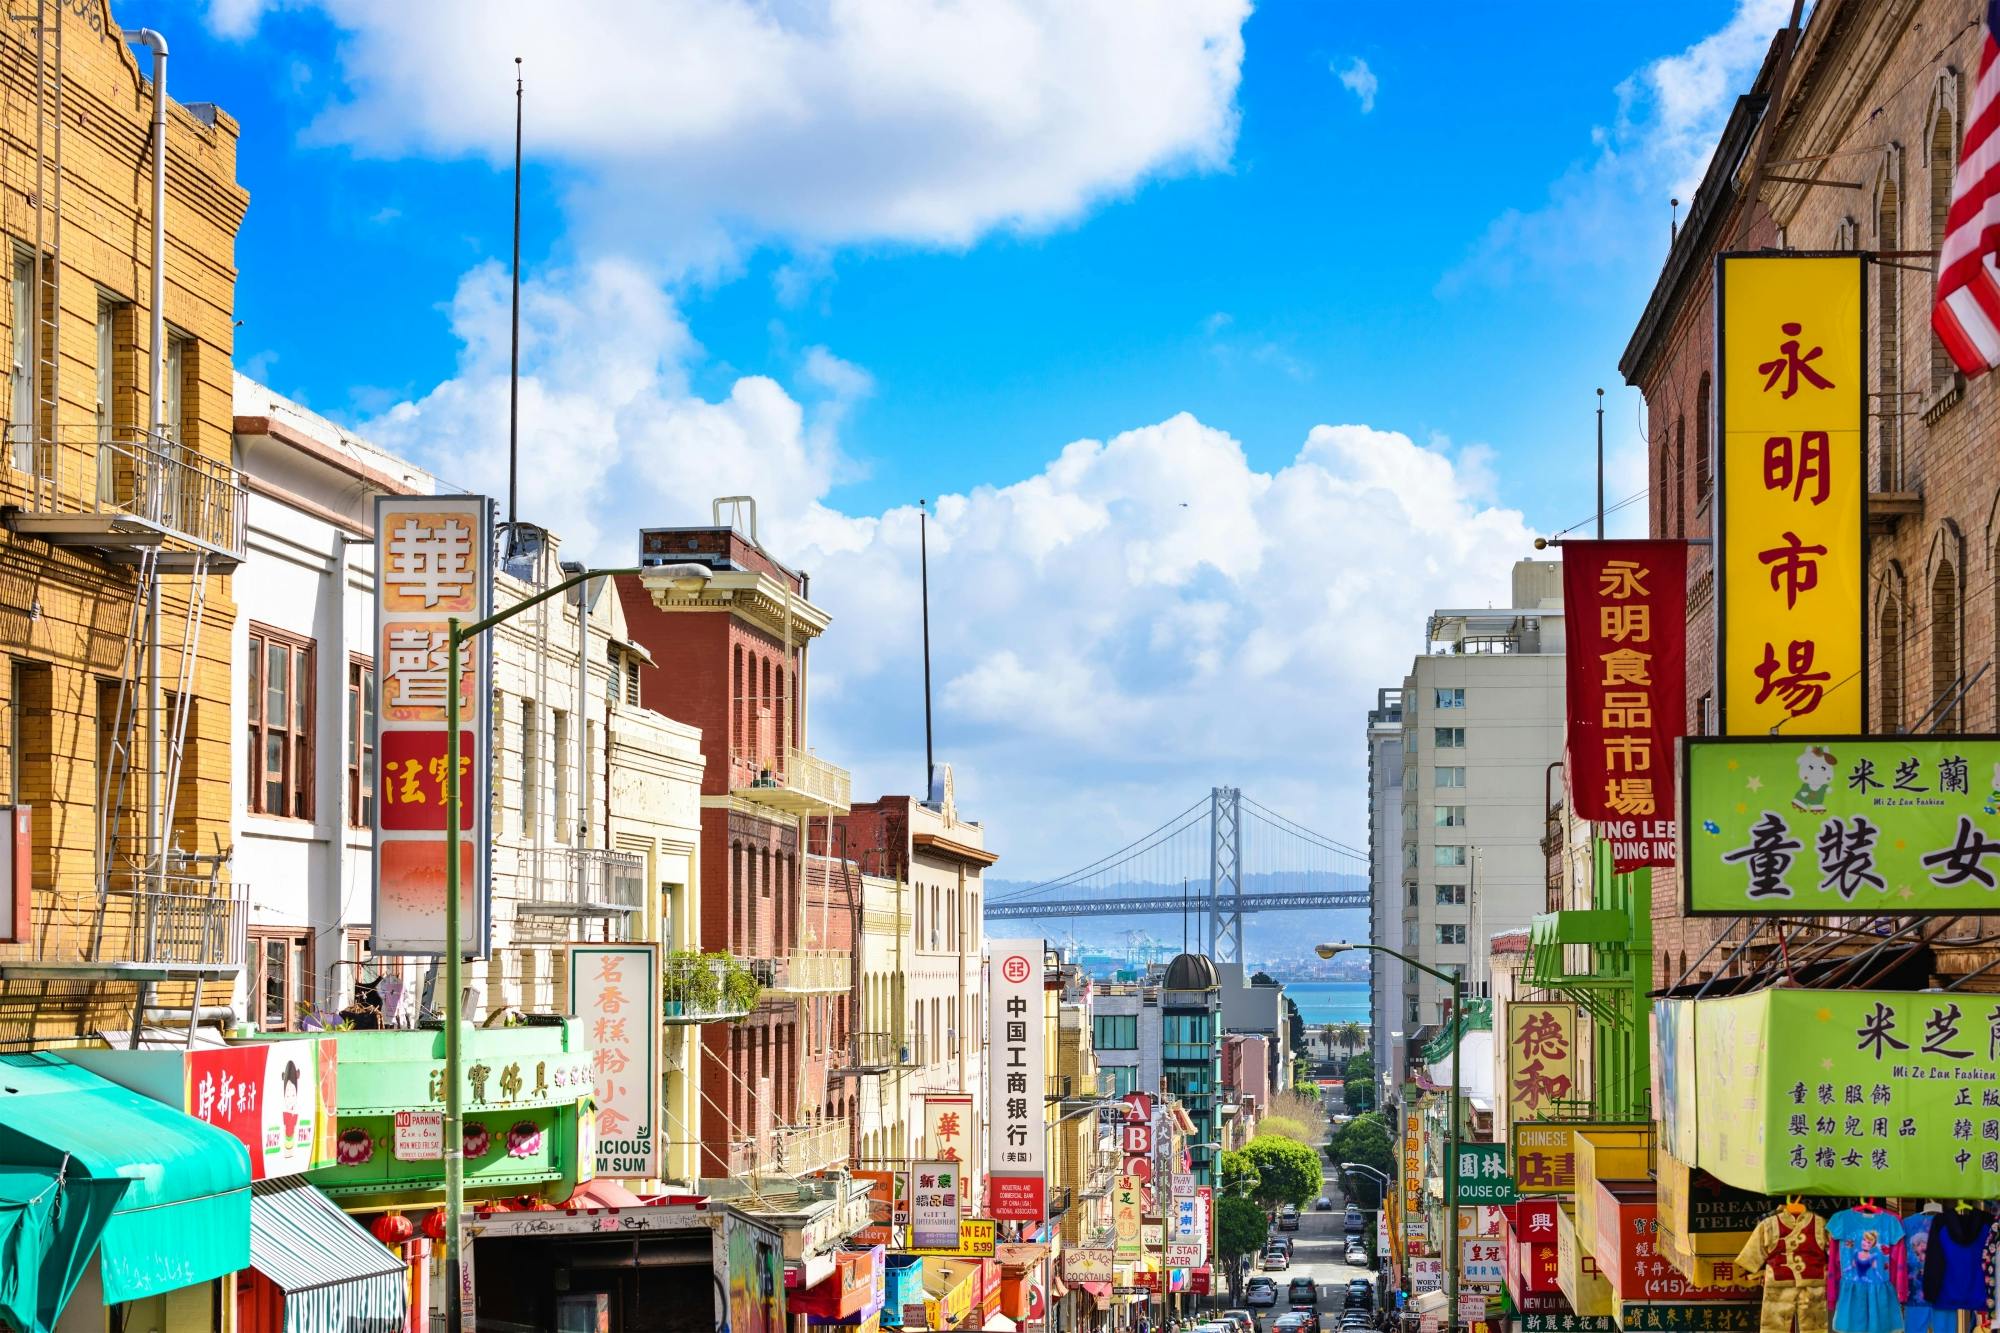 Recorre el barrio chino de San Francisco en el juego de exploración The Warrior Cat